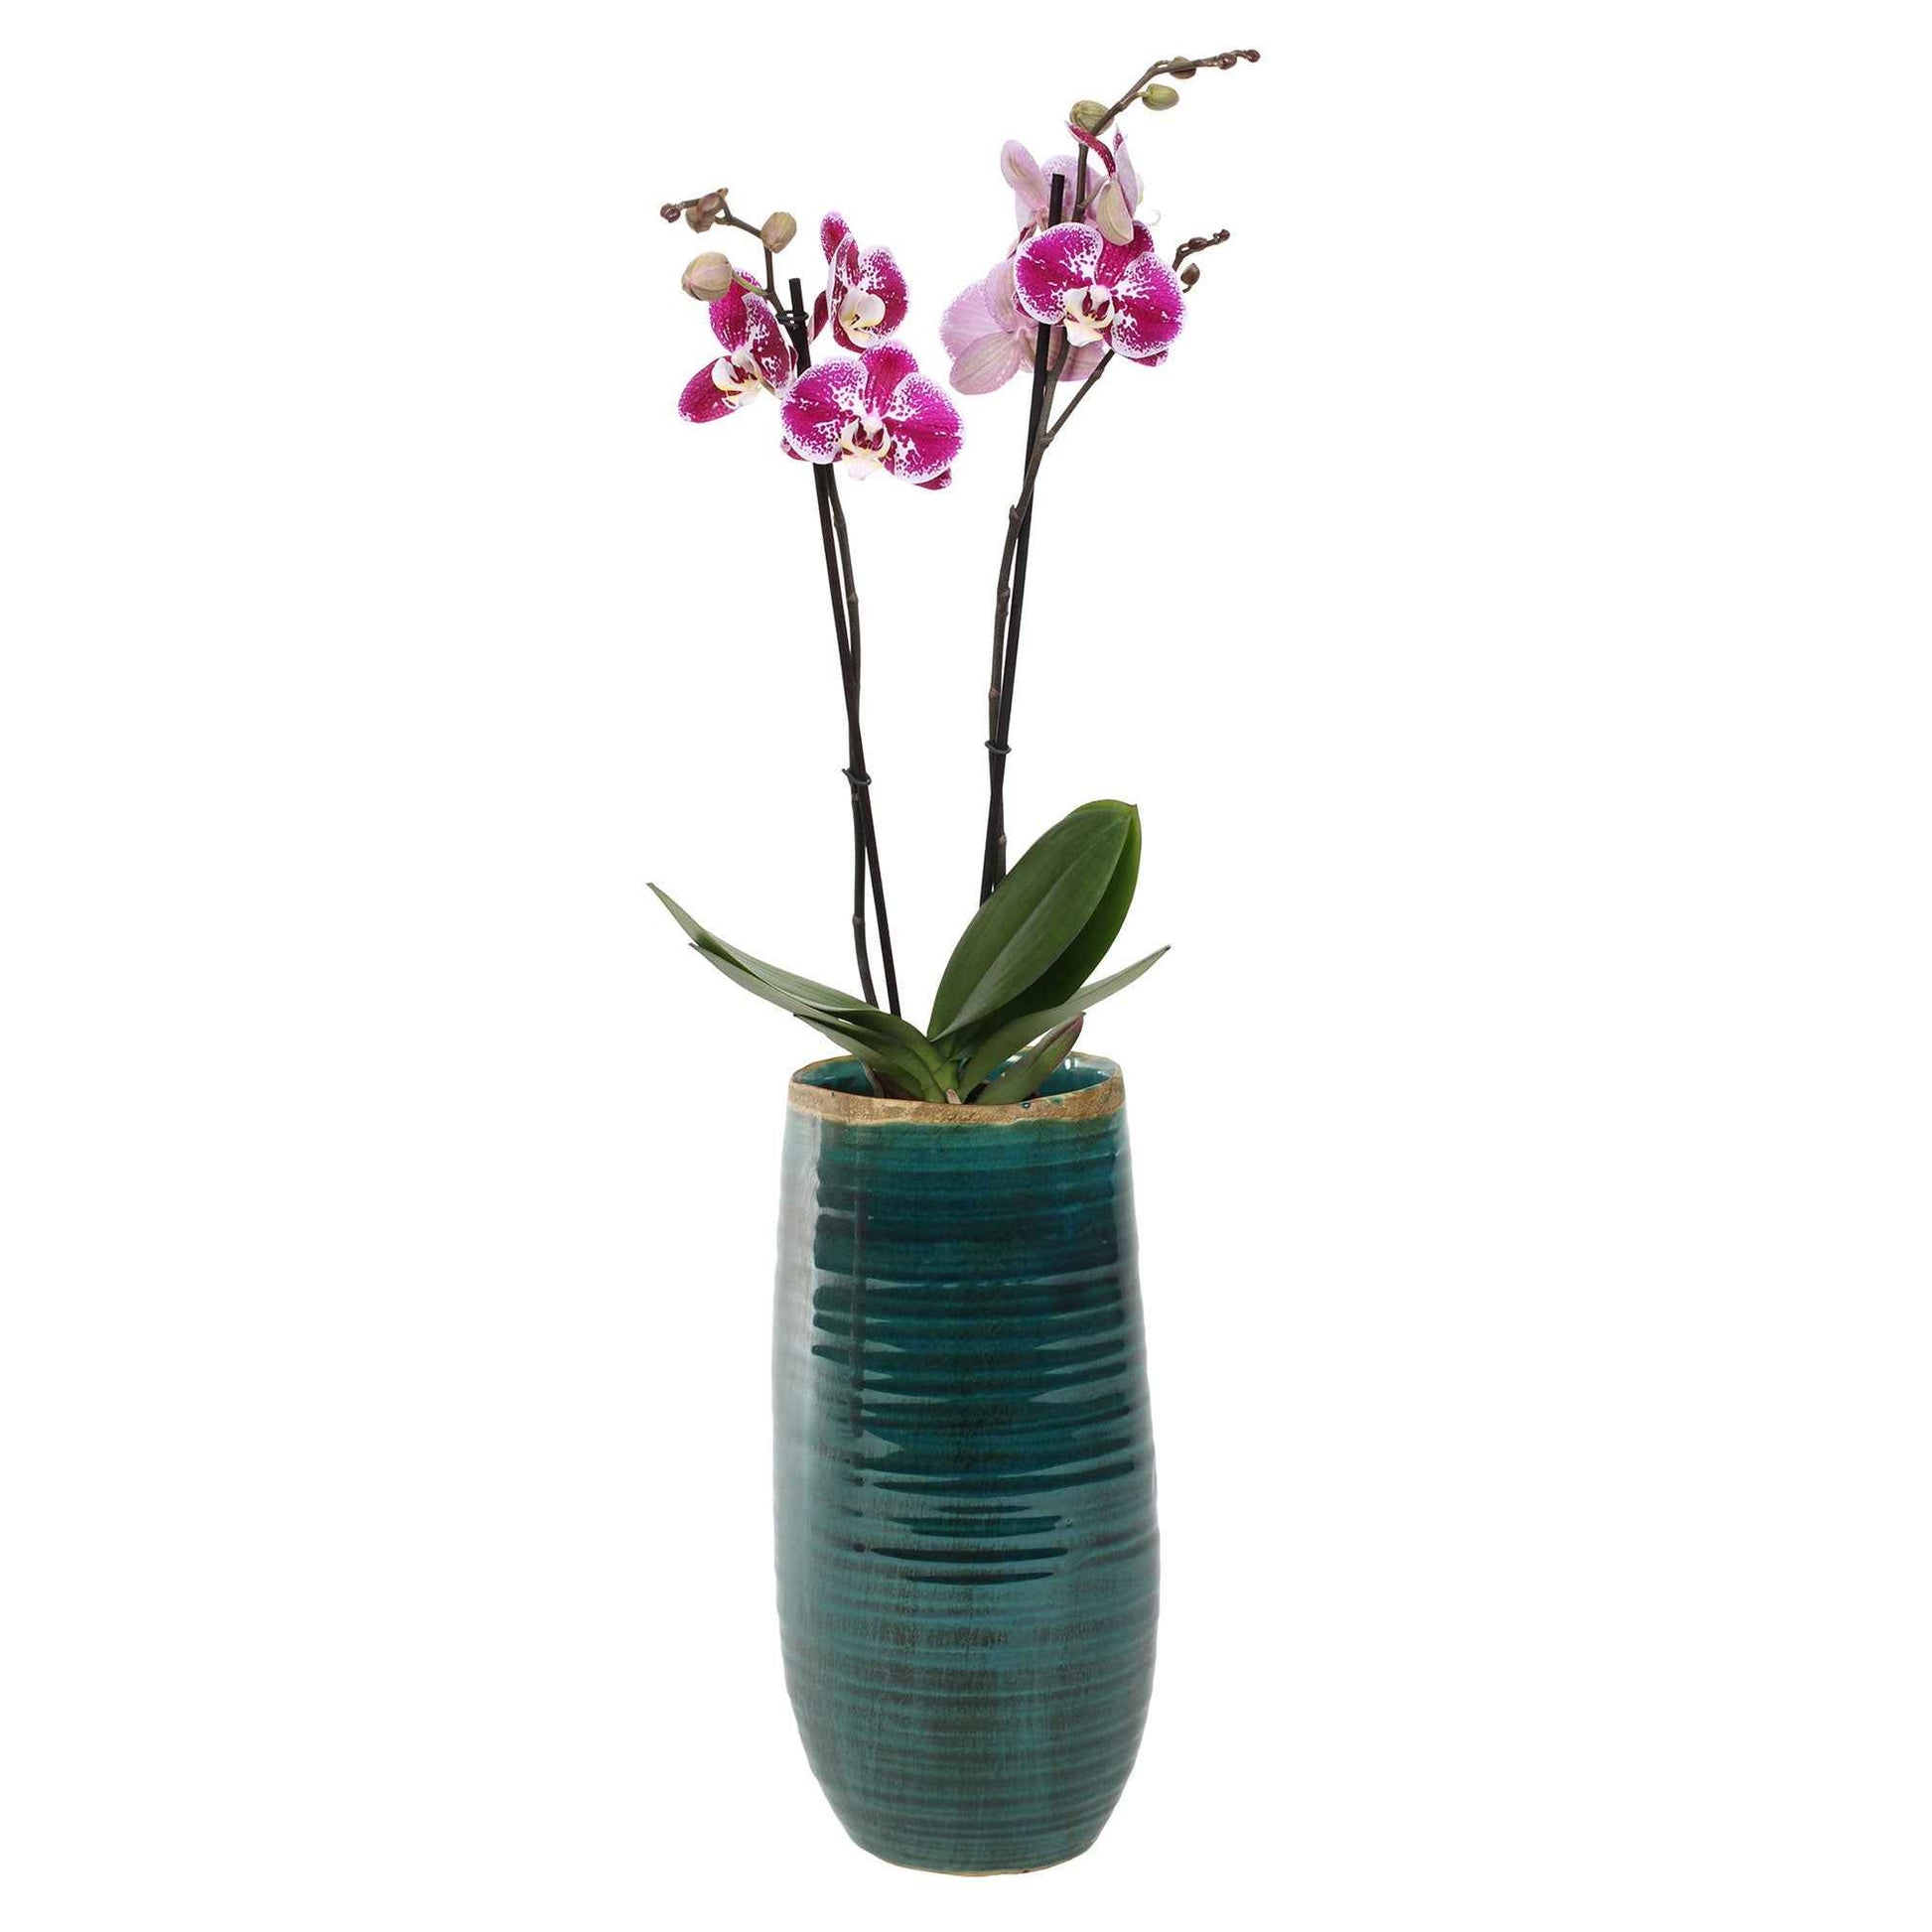 TS pot de fleurs haut Iris rond bleu - Pot pour l'intérieur - Collection colorée